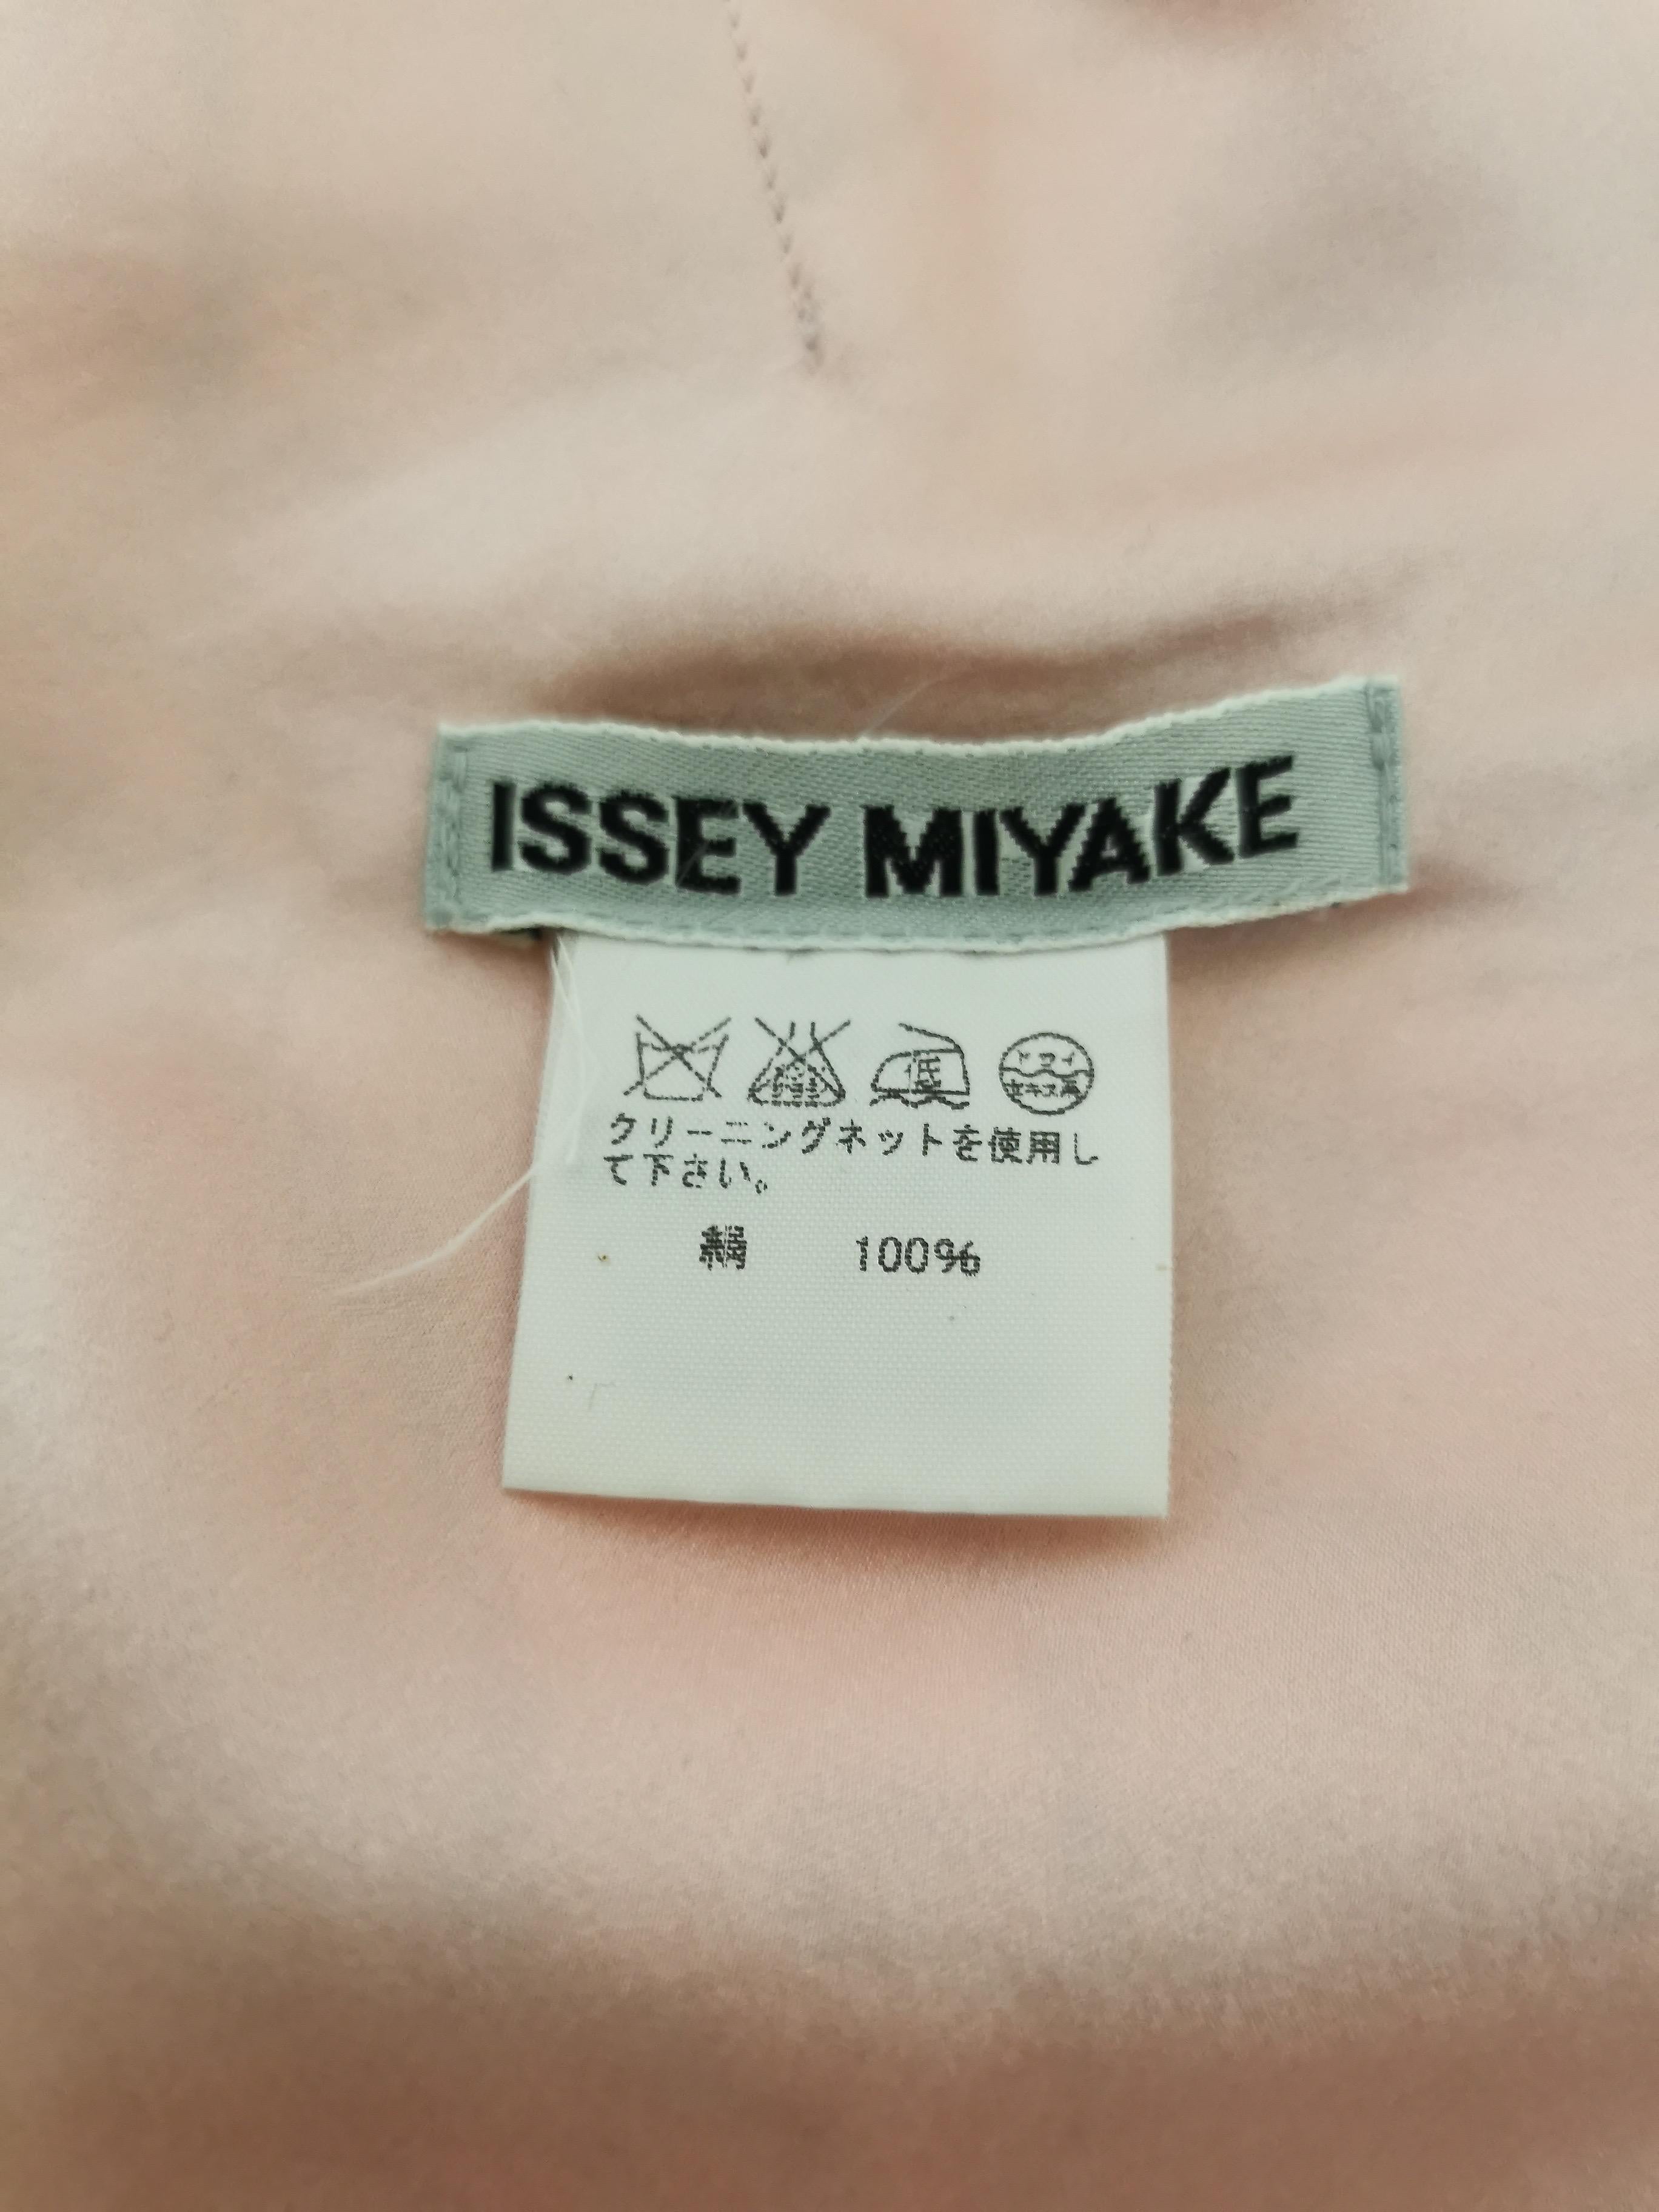 Issey Miyake Aya Takano Limited Edition 2004 Silkscreen Printed ...